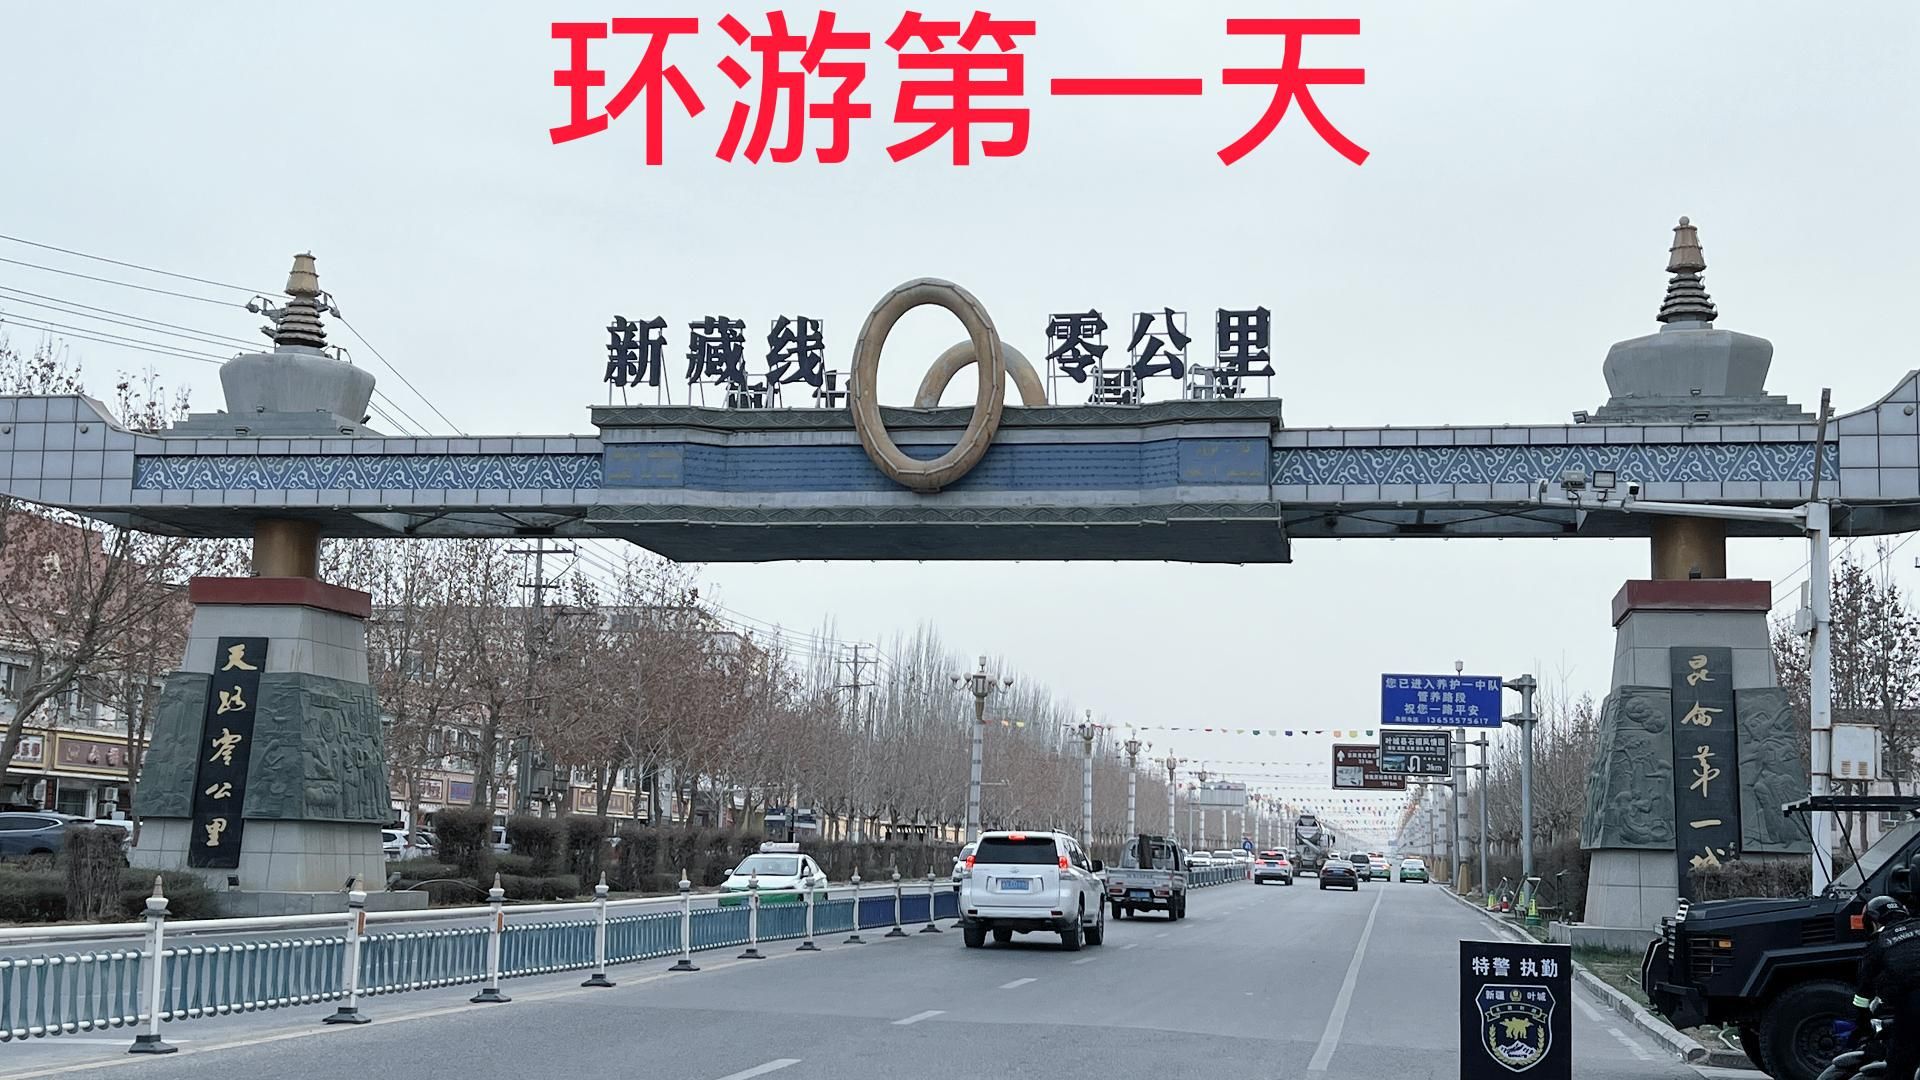 环游中国边境线第一天(叶城)新藏线0公里